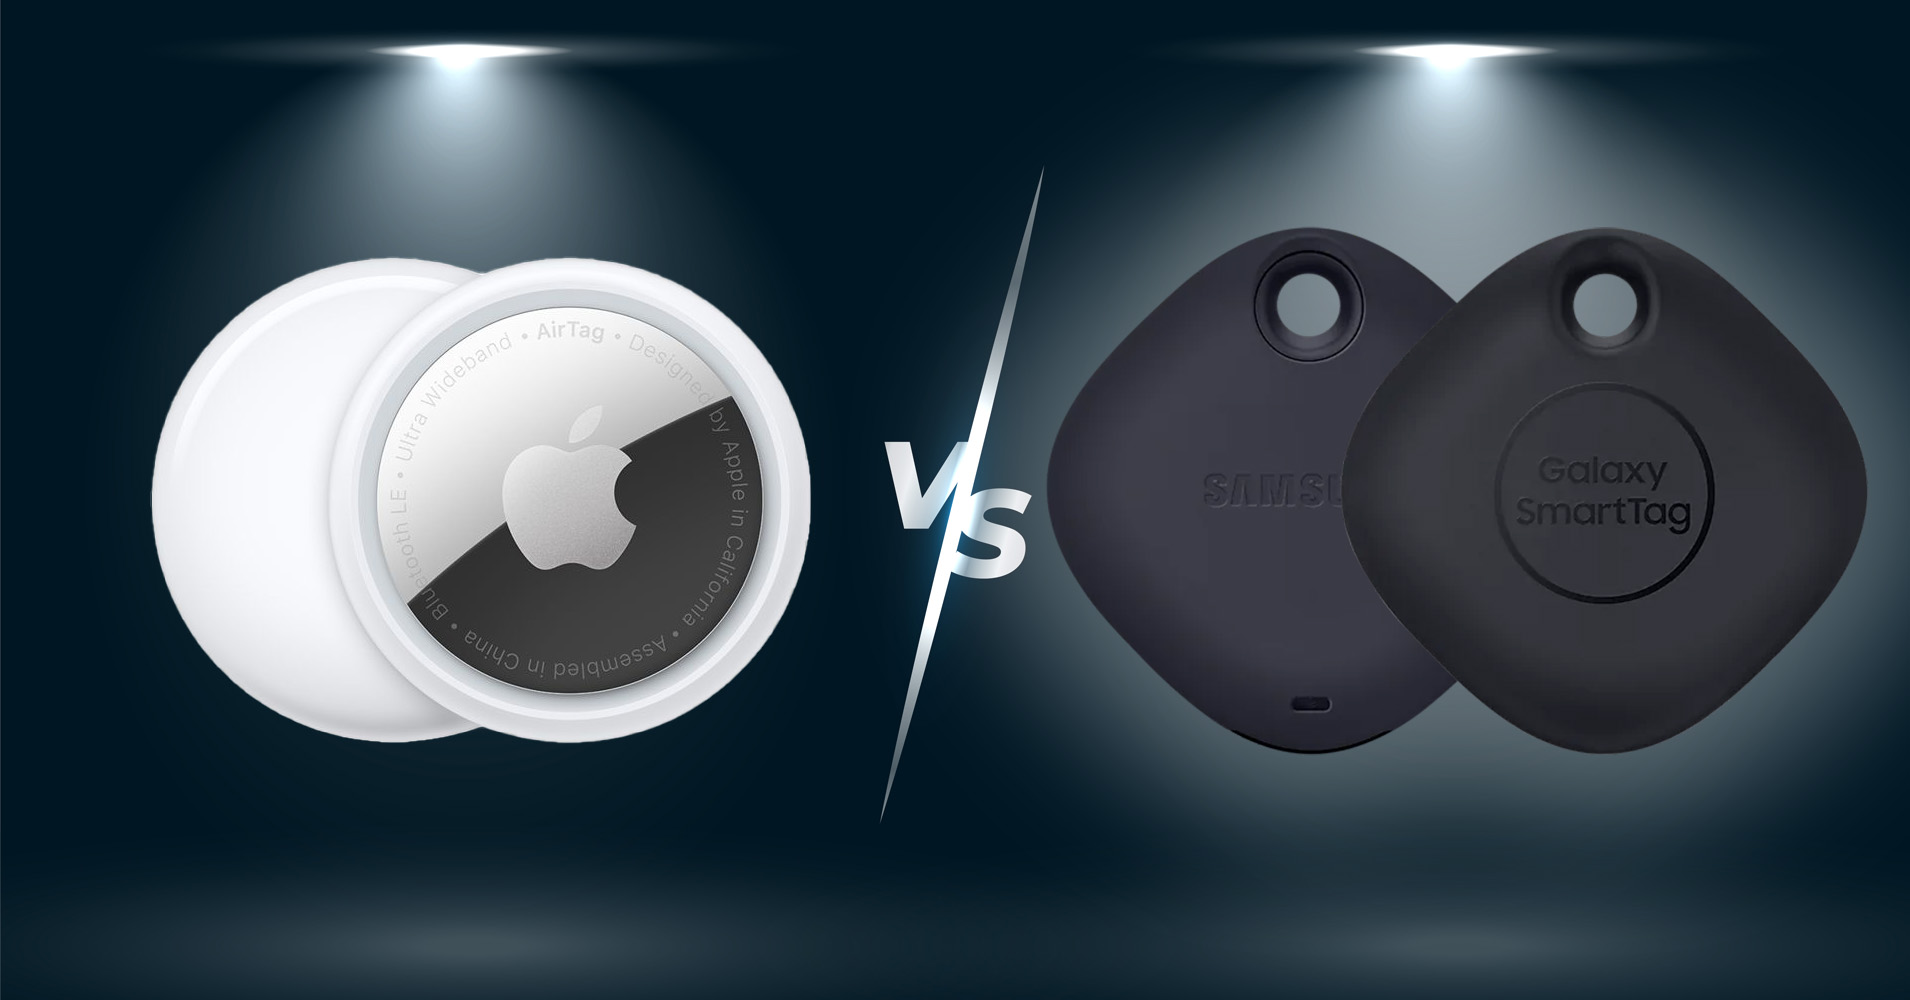 Sforum - Trang thông tin công nghệ mới nhất cover-smt So sánh Galaxy SmartTag với Apple AirTag: Mức giá chênh lệch hơn 2 lần, còn tính năng thì sao? 